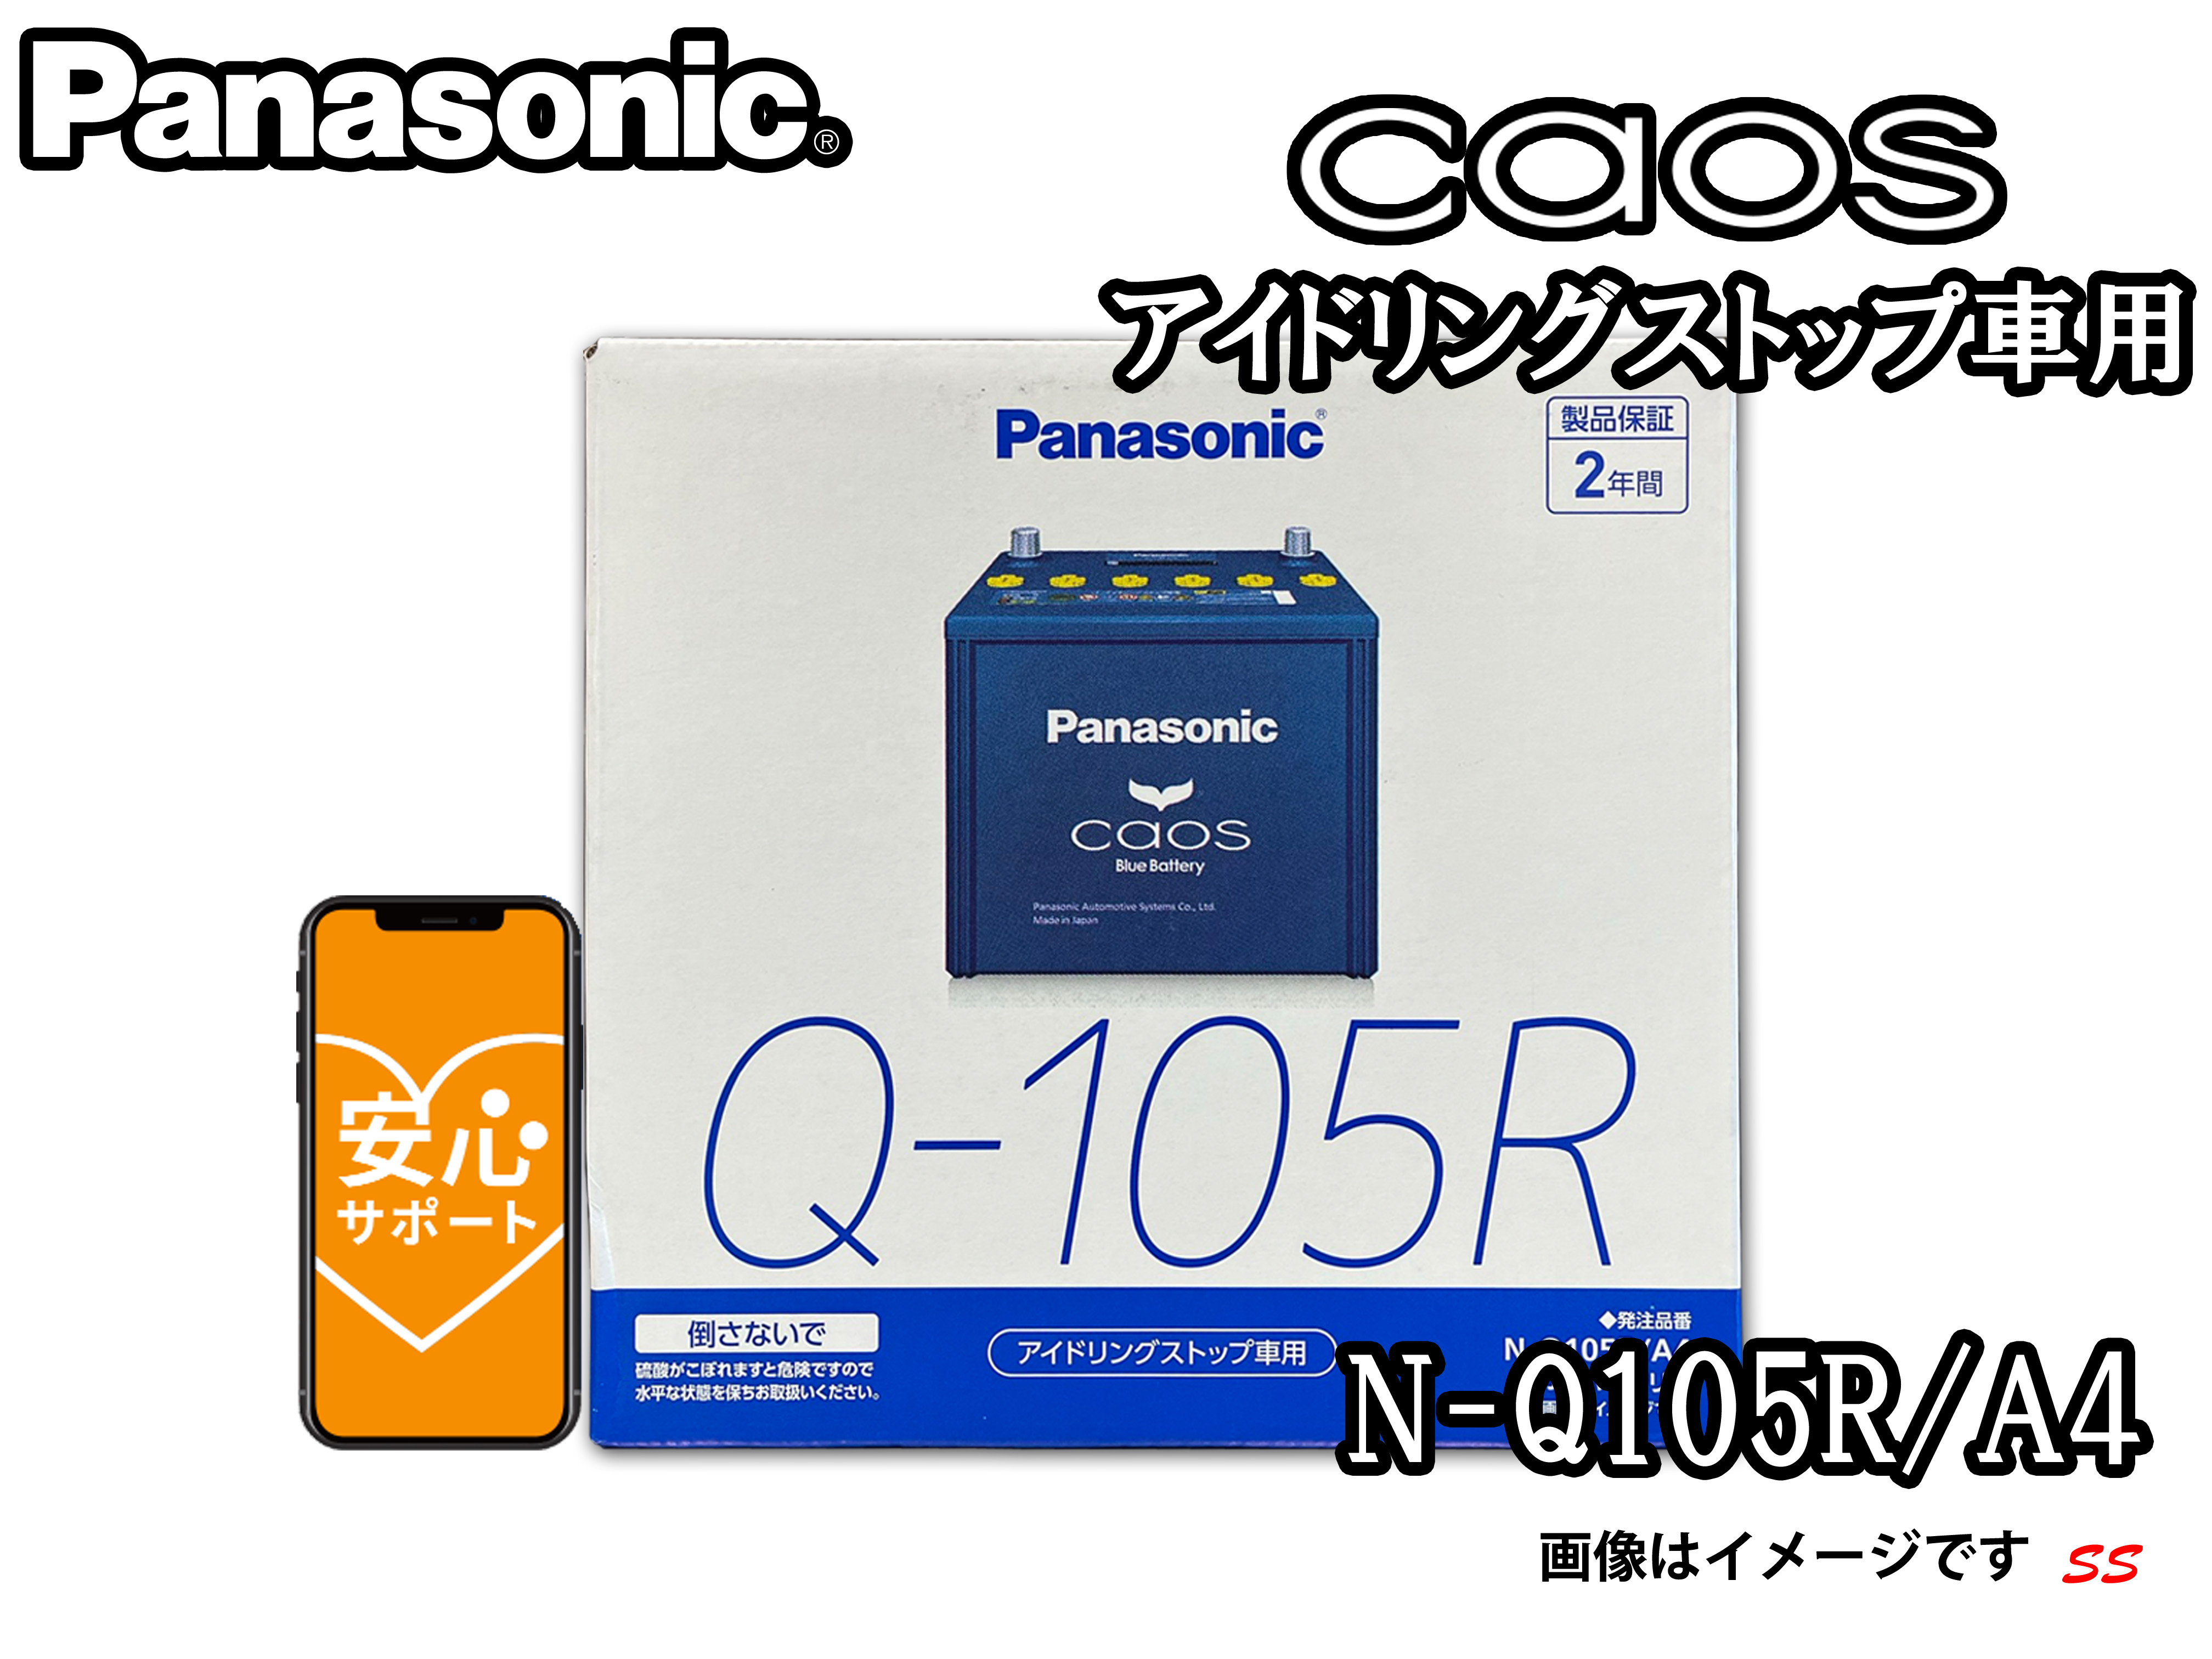 N-Q105R/A4 ブルーバッテリー安 心サポート付き パナソニック ca os 